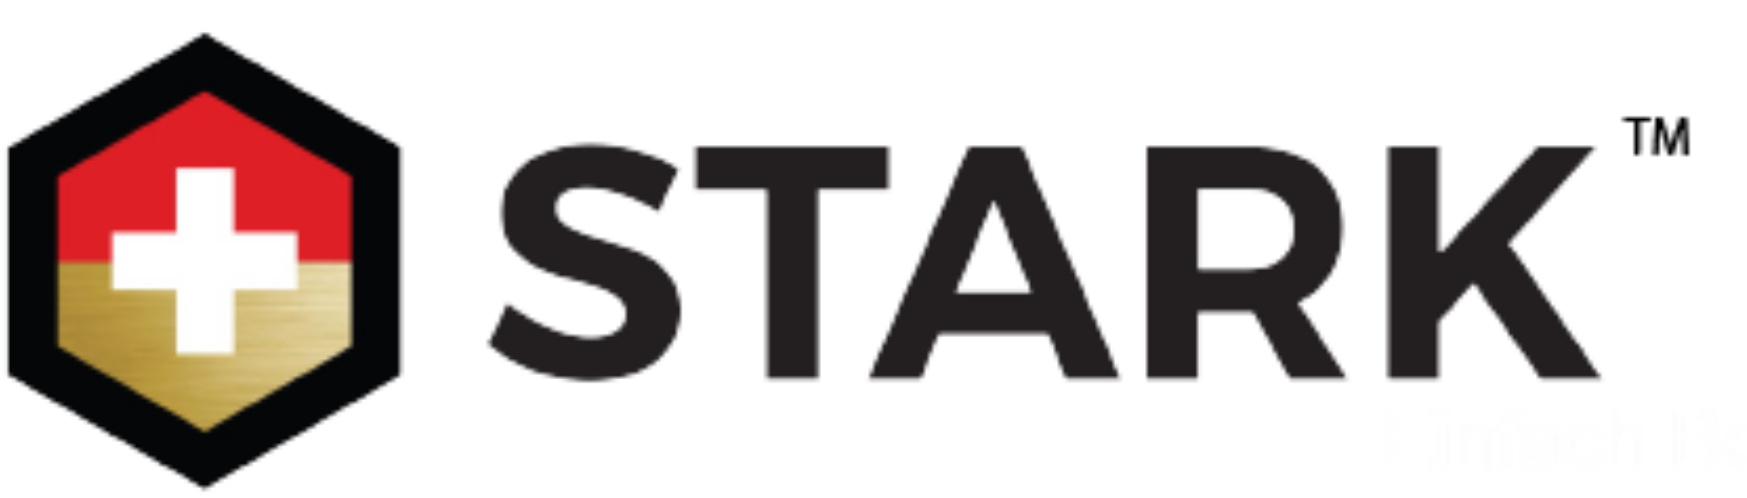 STARK-Logo-2021.png